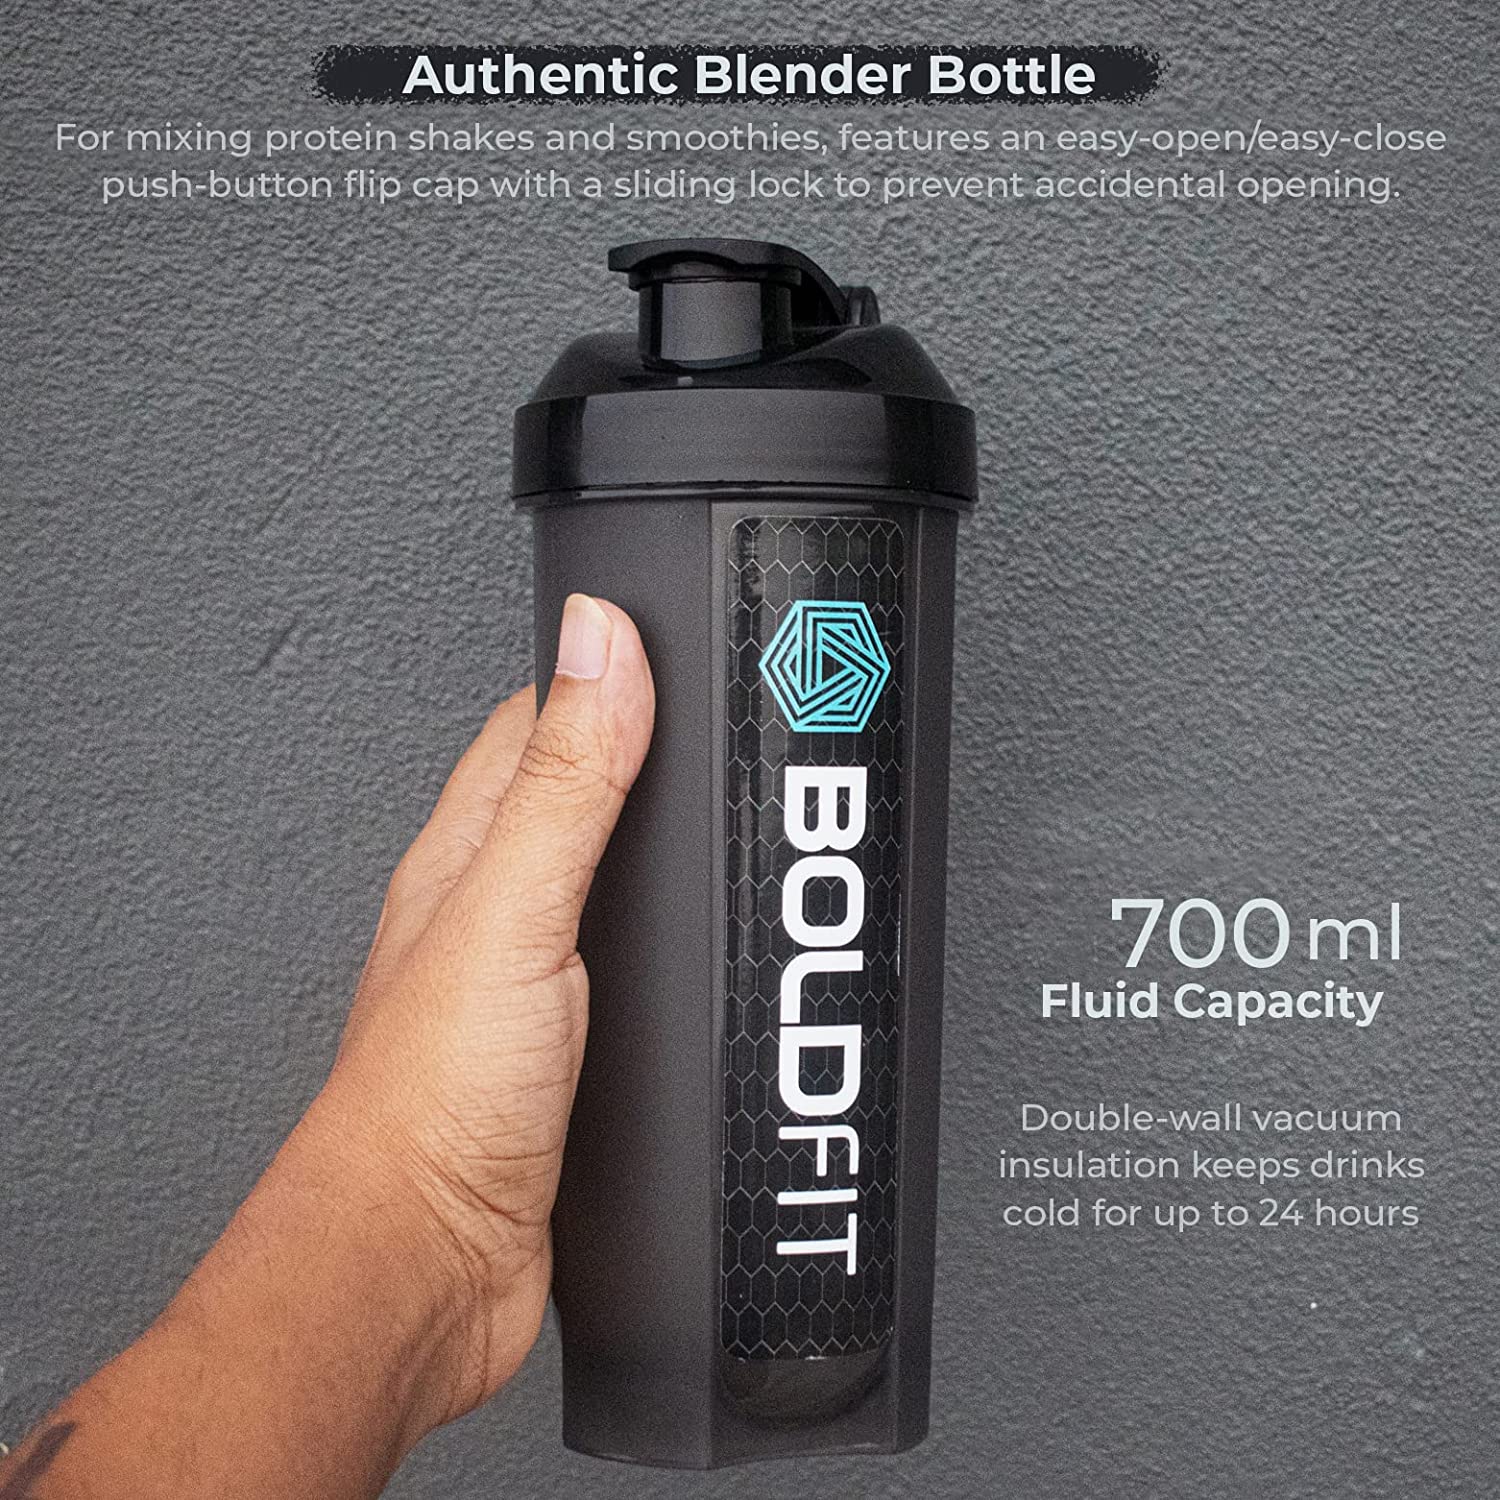 TRUE INDIAN Combo Of Shaker Bottles for Protein Shake, Gym Bottles for Men  Protein Shaker Bottle